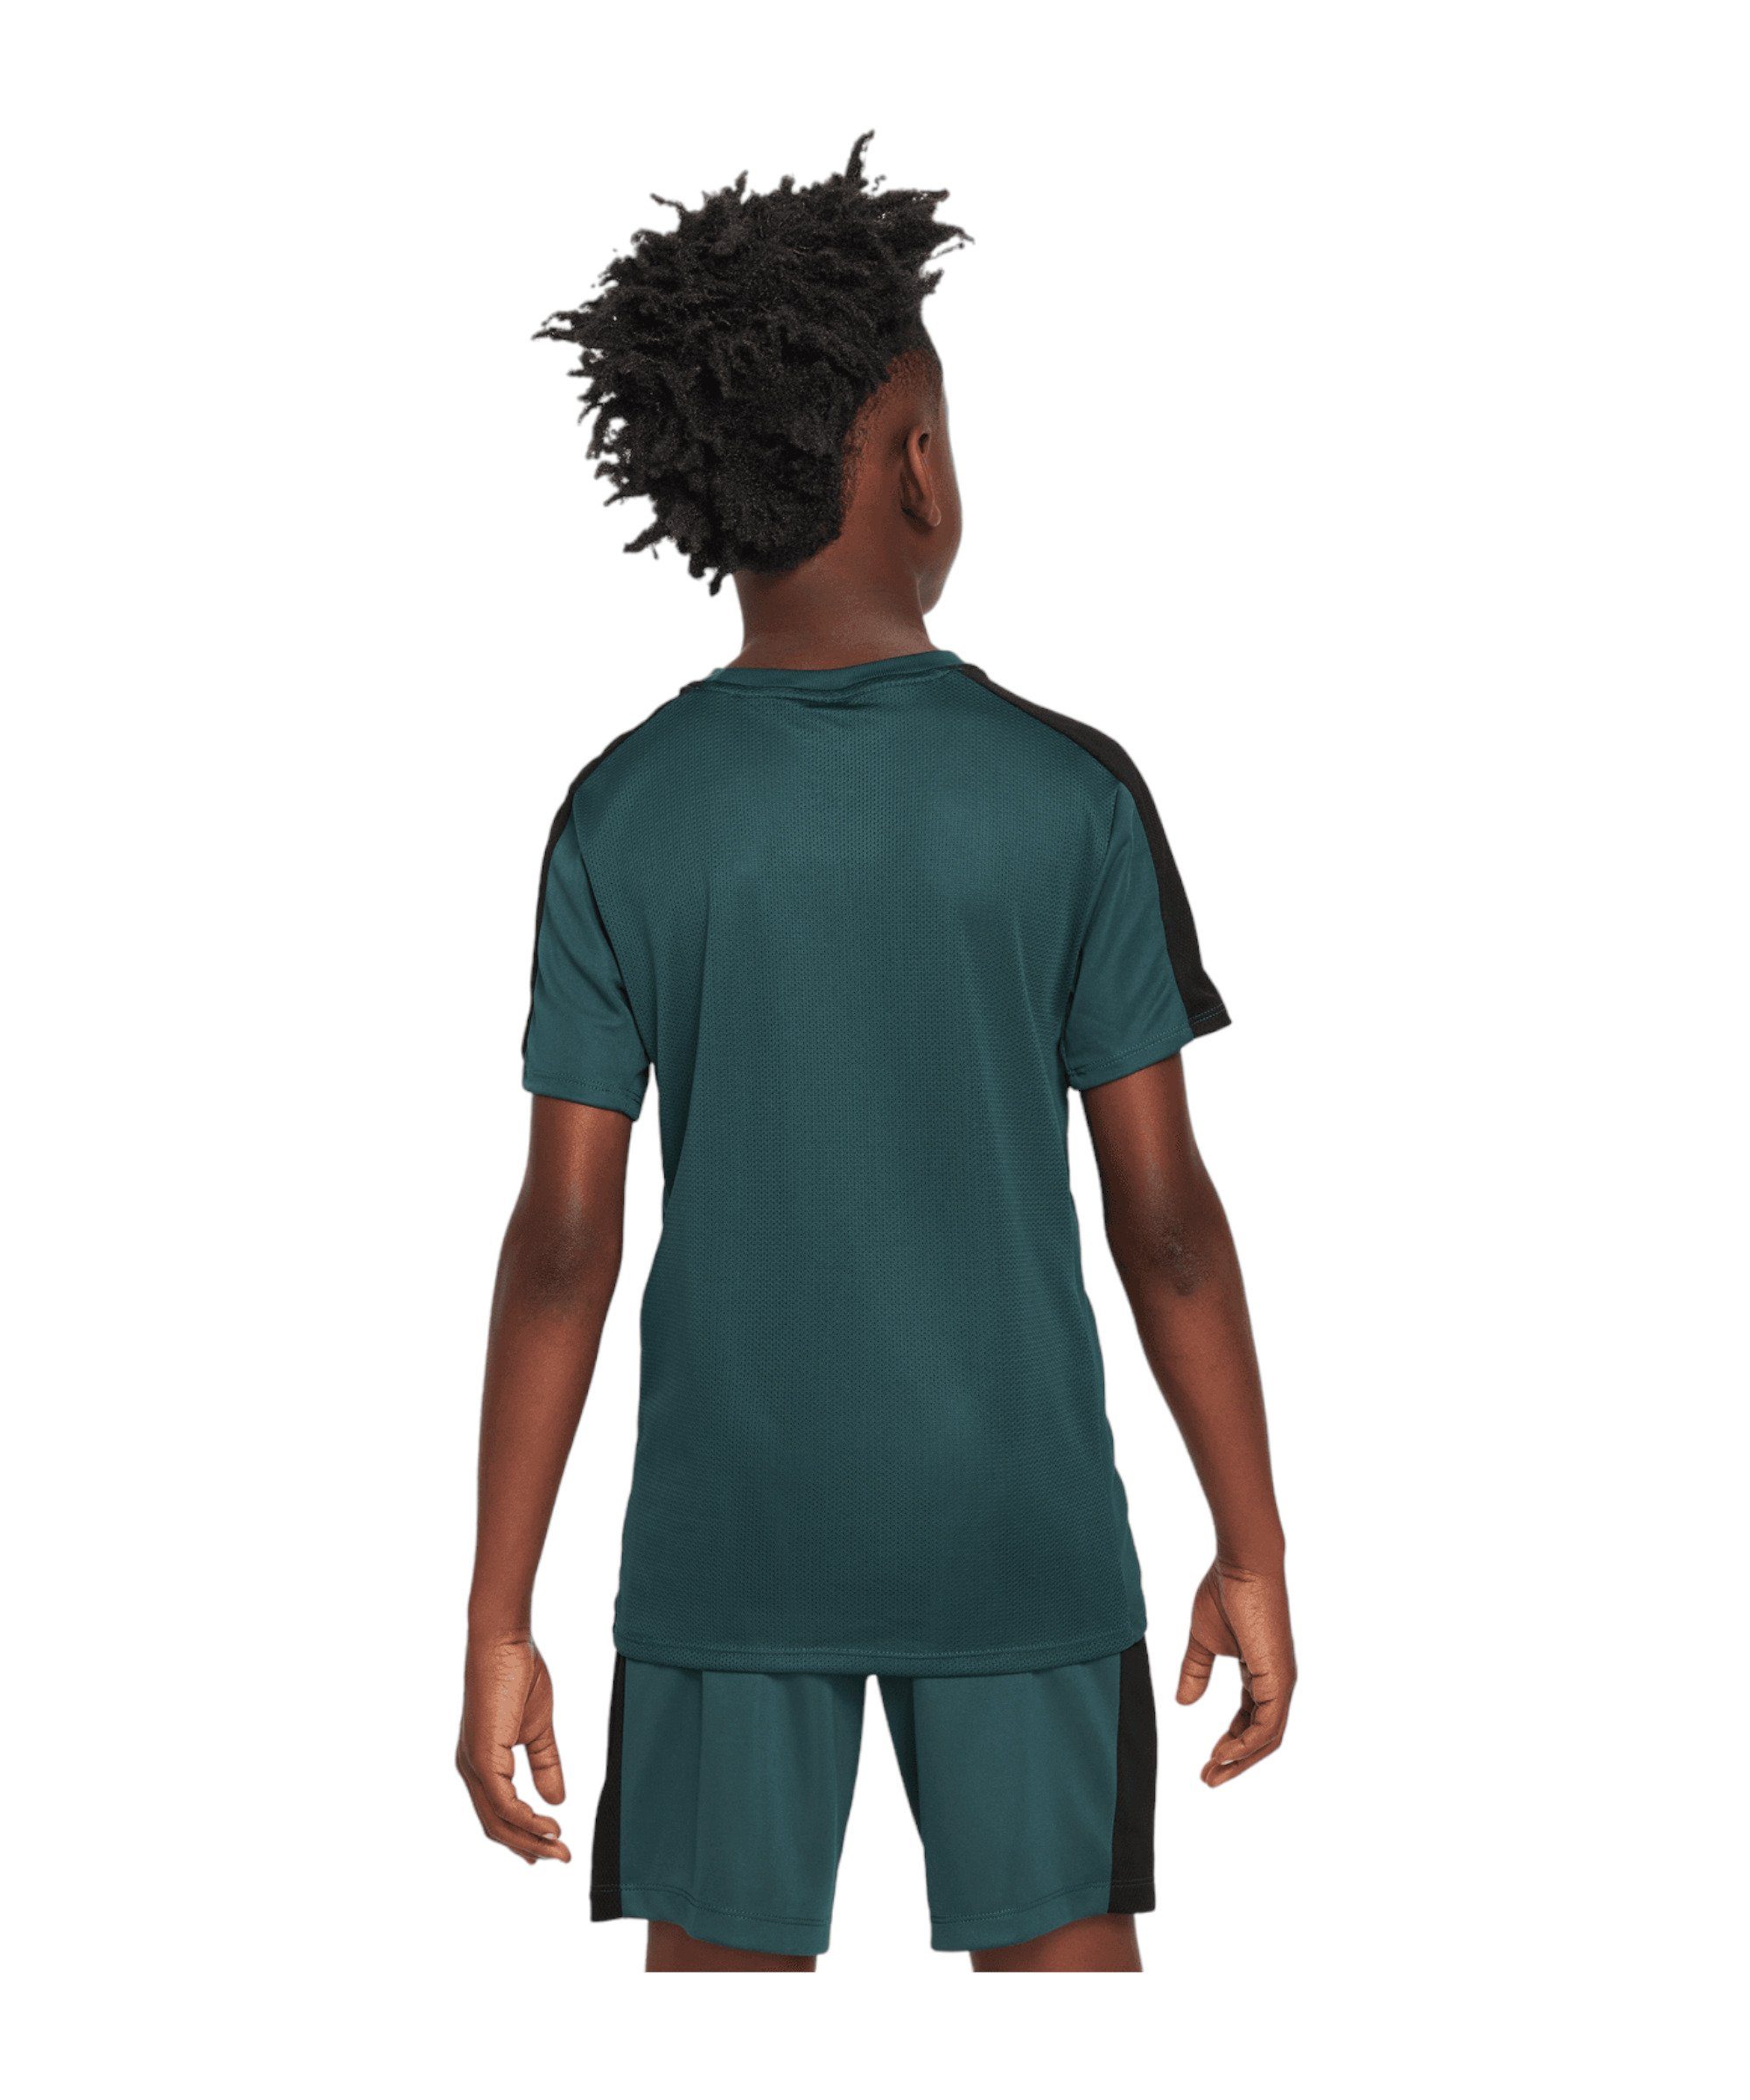 Academy T-Shirt 23 T-Shirt default Nike gruen